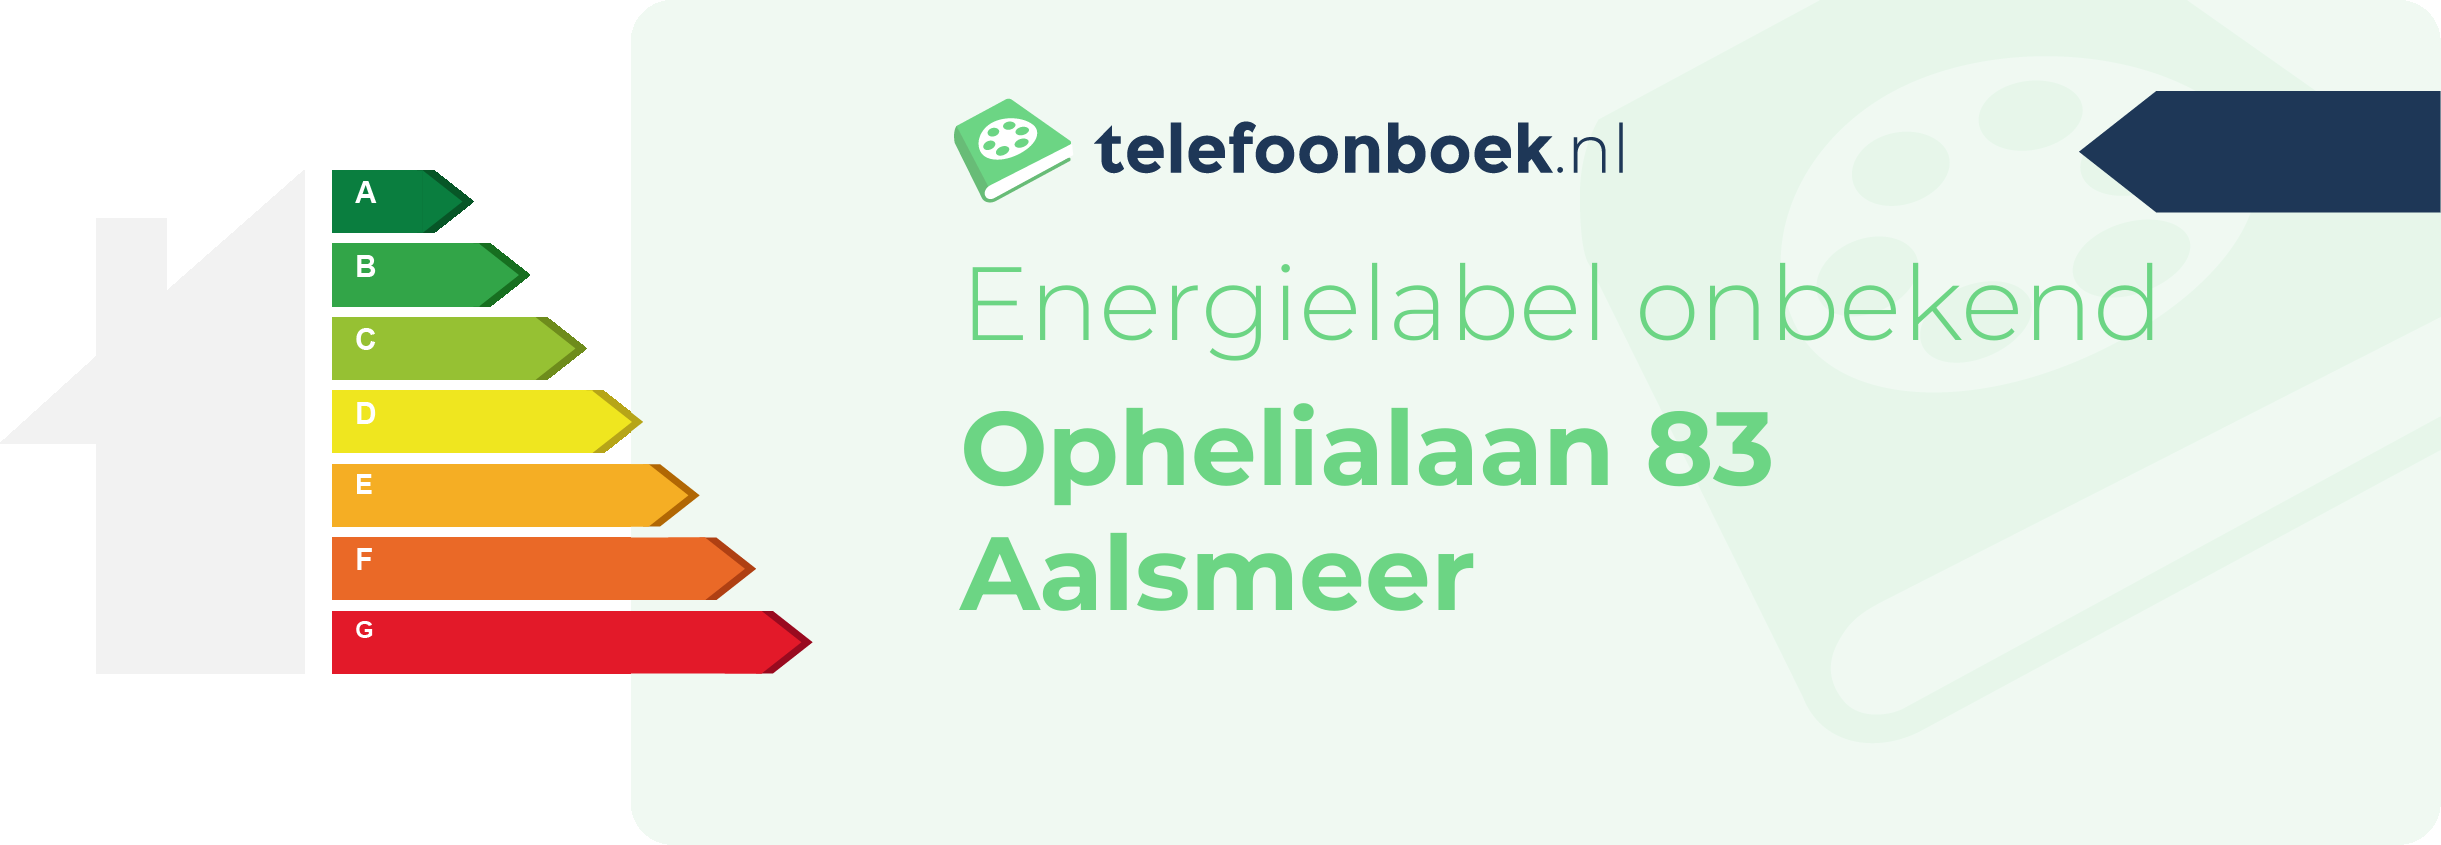 Energielabel Ophelialaan 83 Aalsmeer